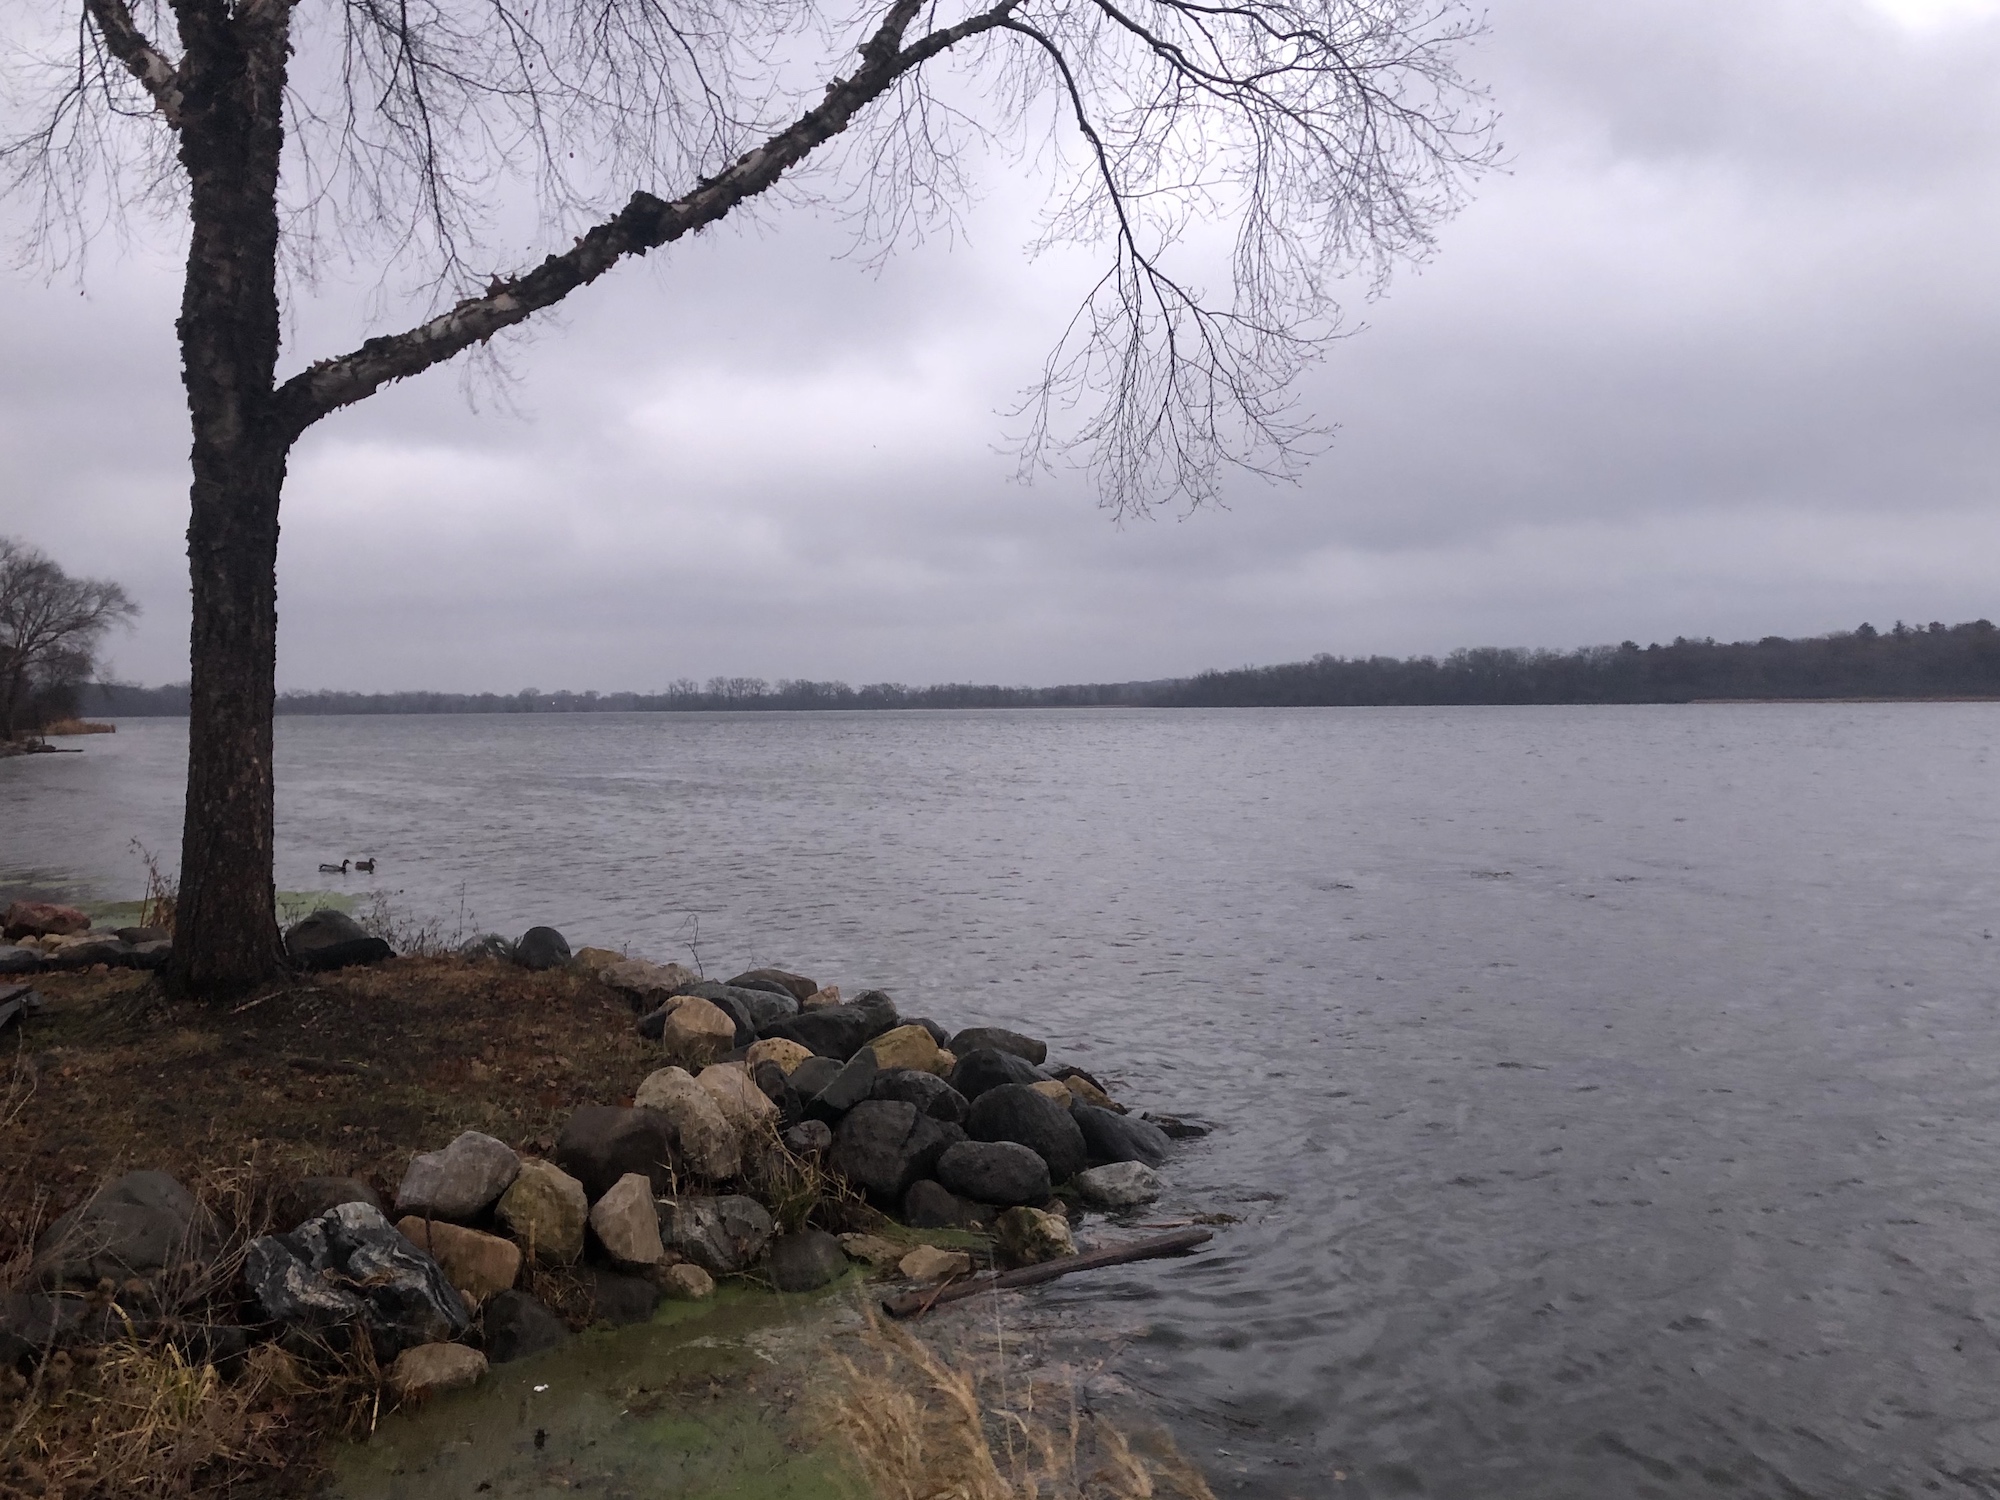 Lake Wingra on November 27, 2019.